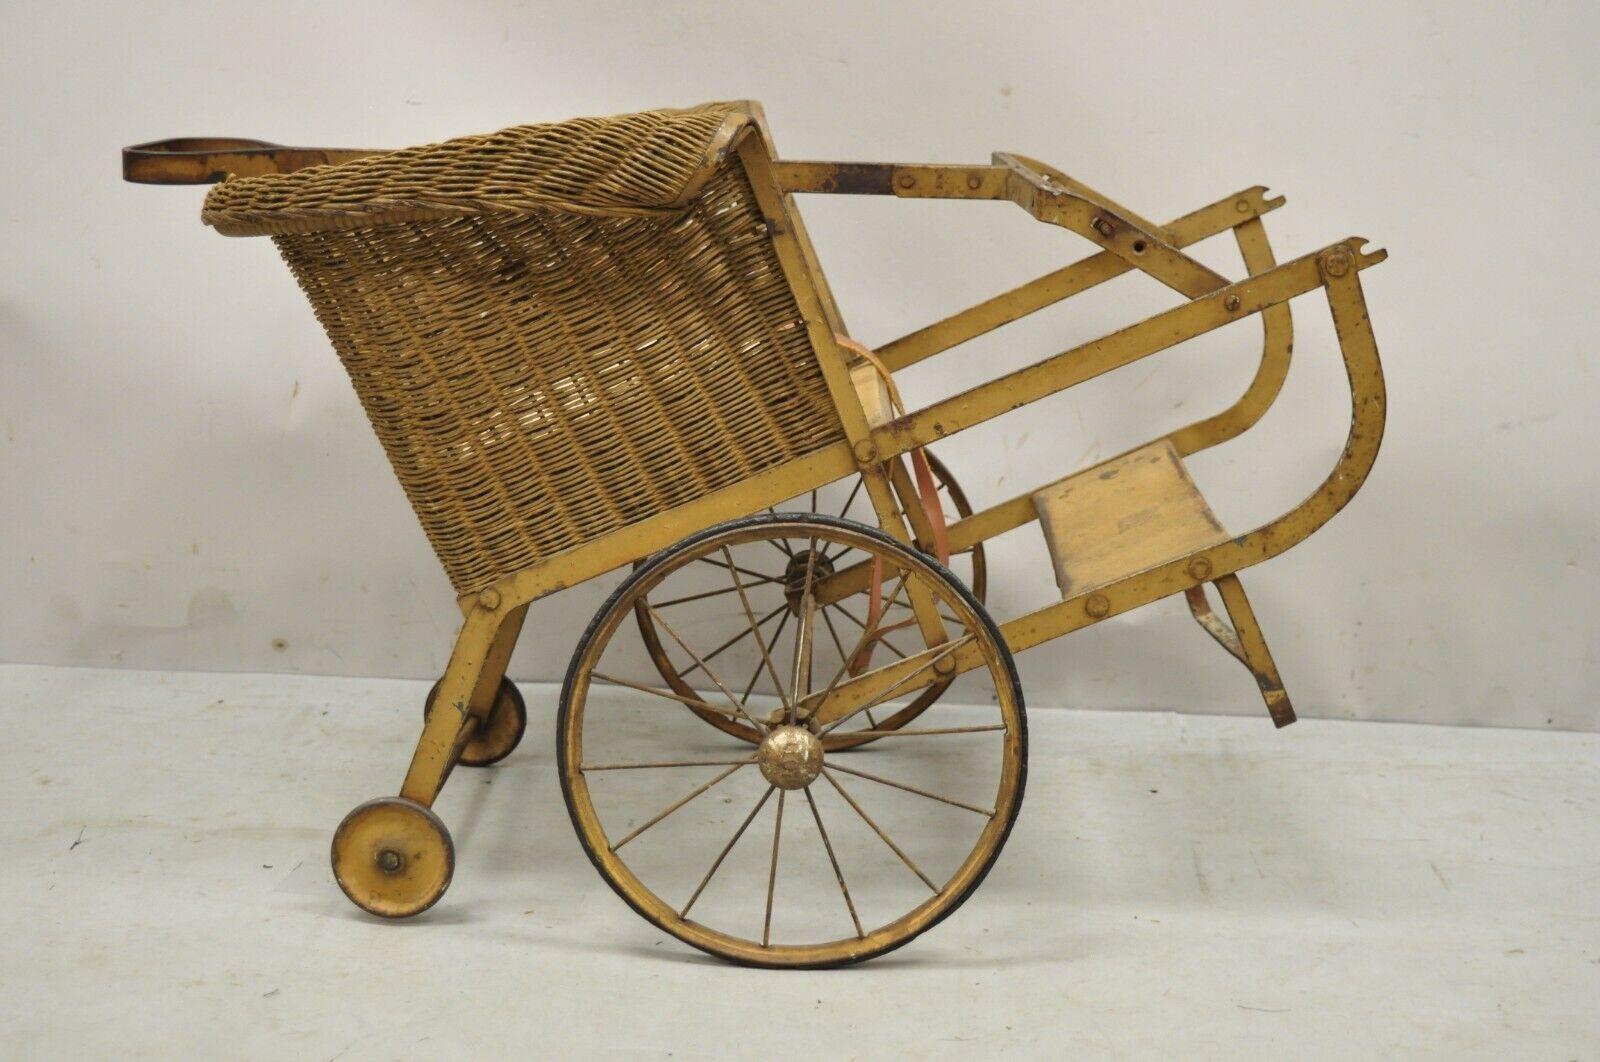 egg stroller with dog basket